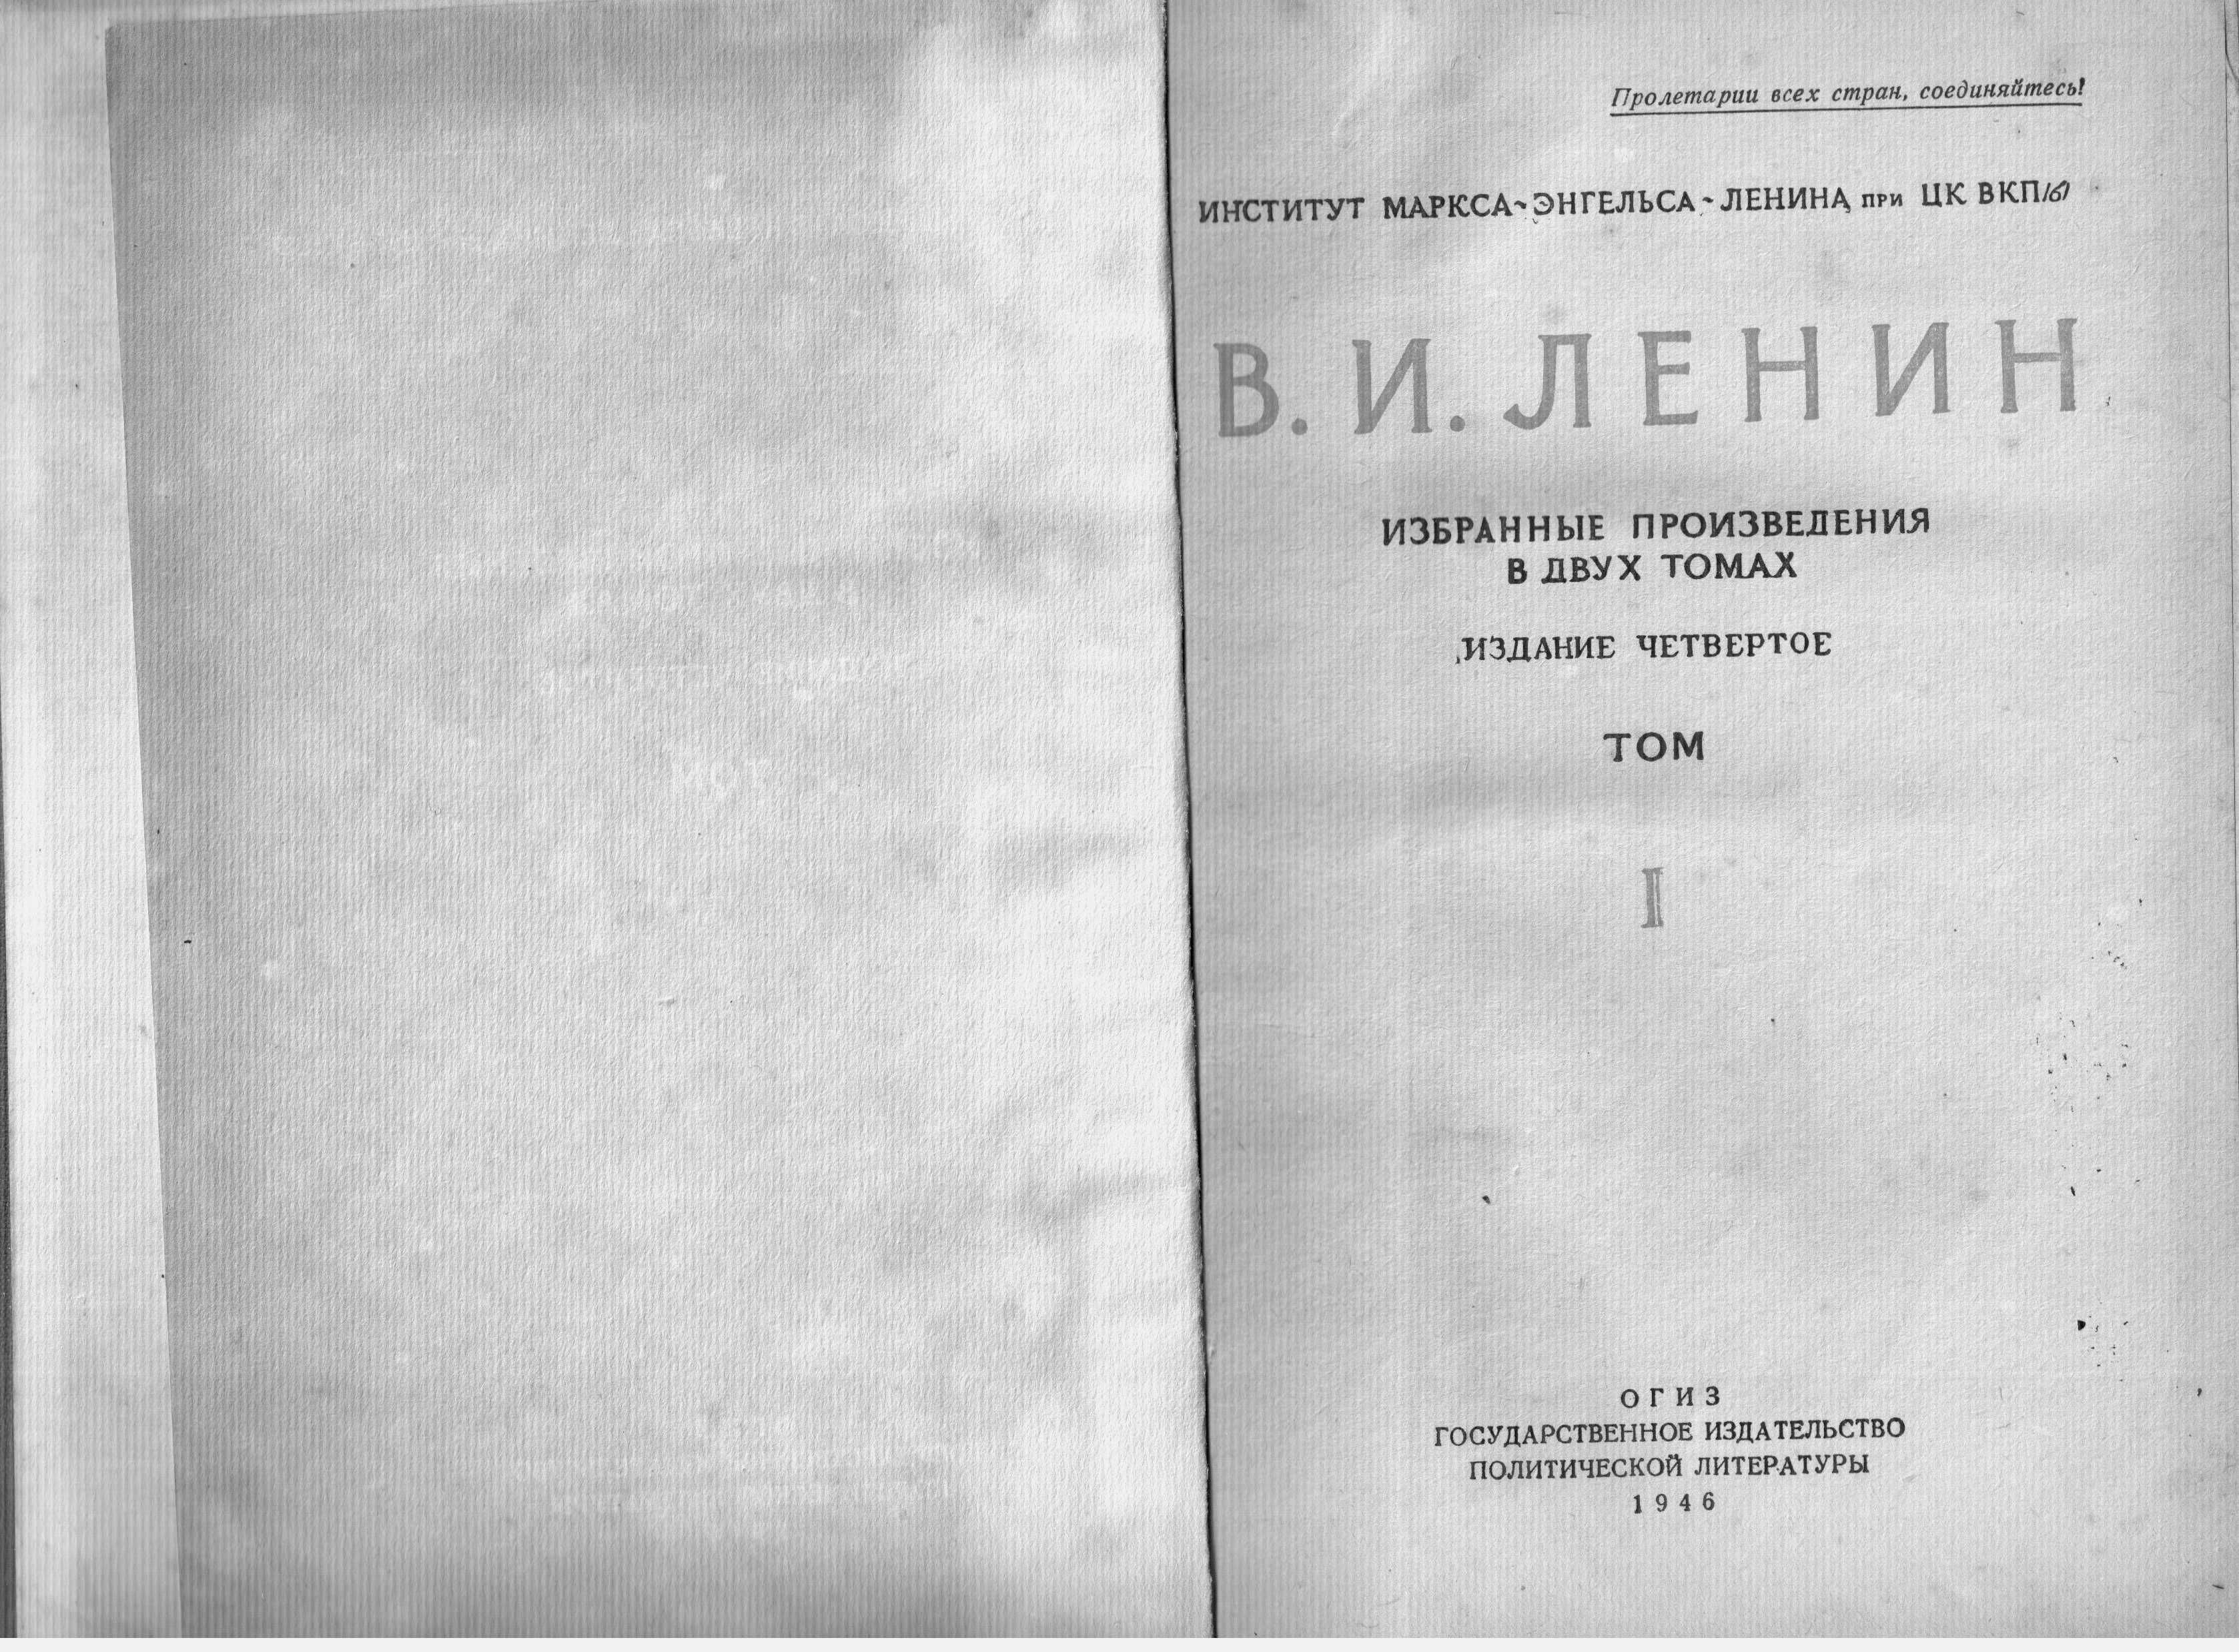 Ленин В.И. Избранные произведения в 2-х томах. Издание 4-е. М., 1946